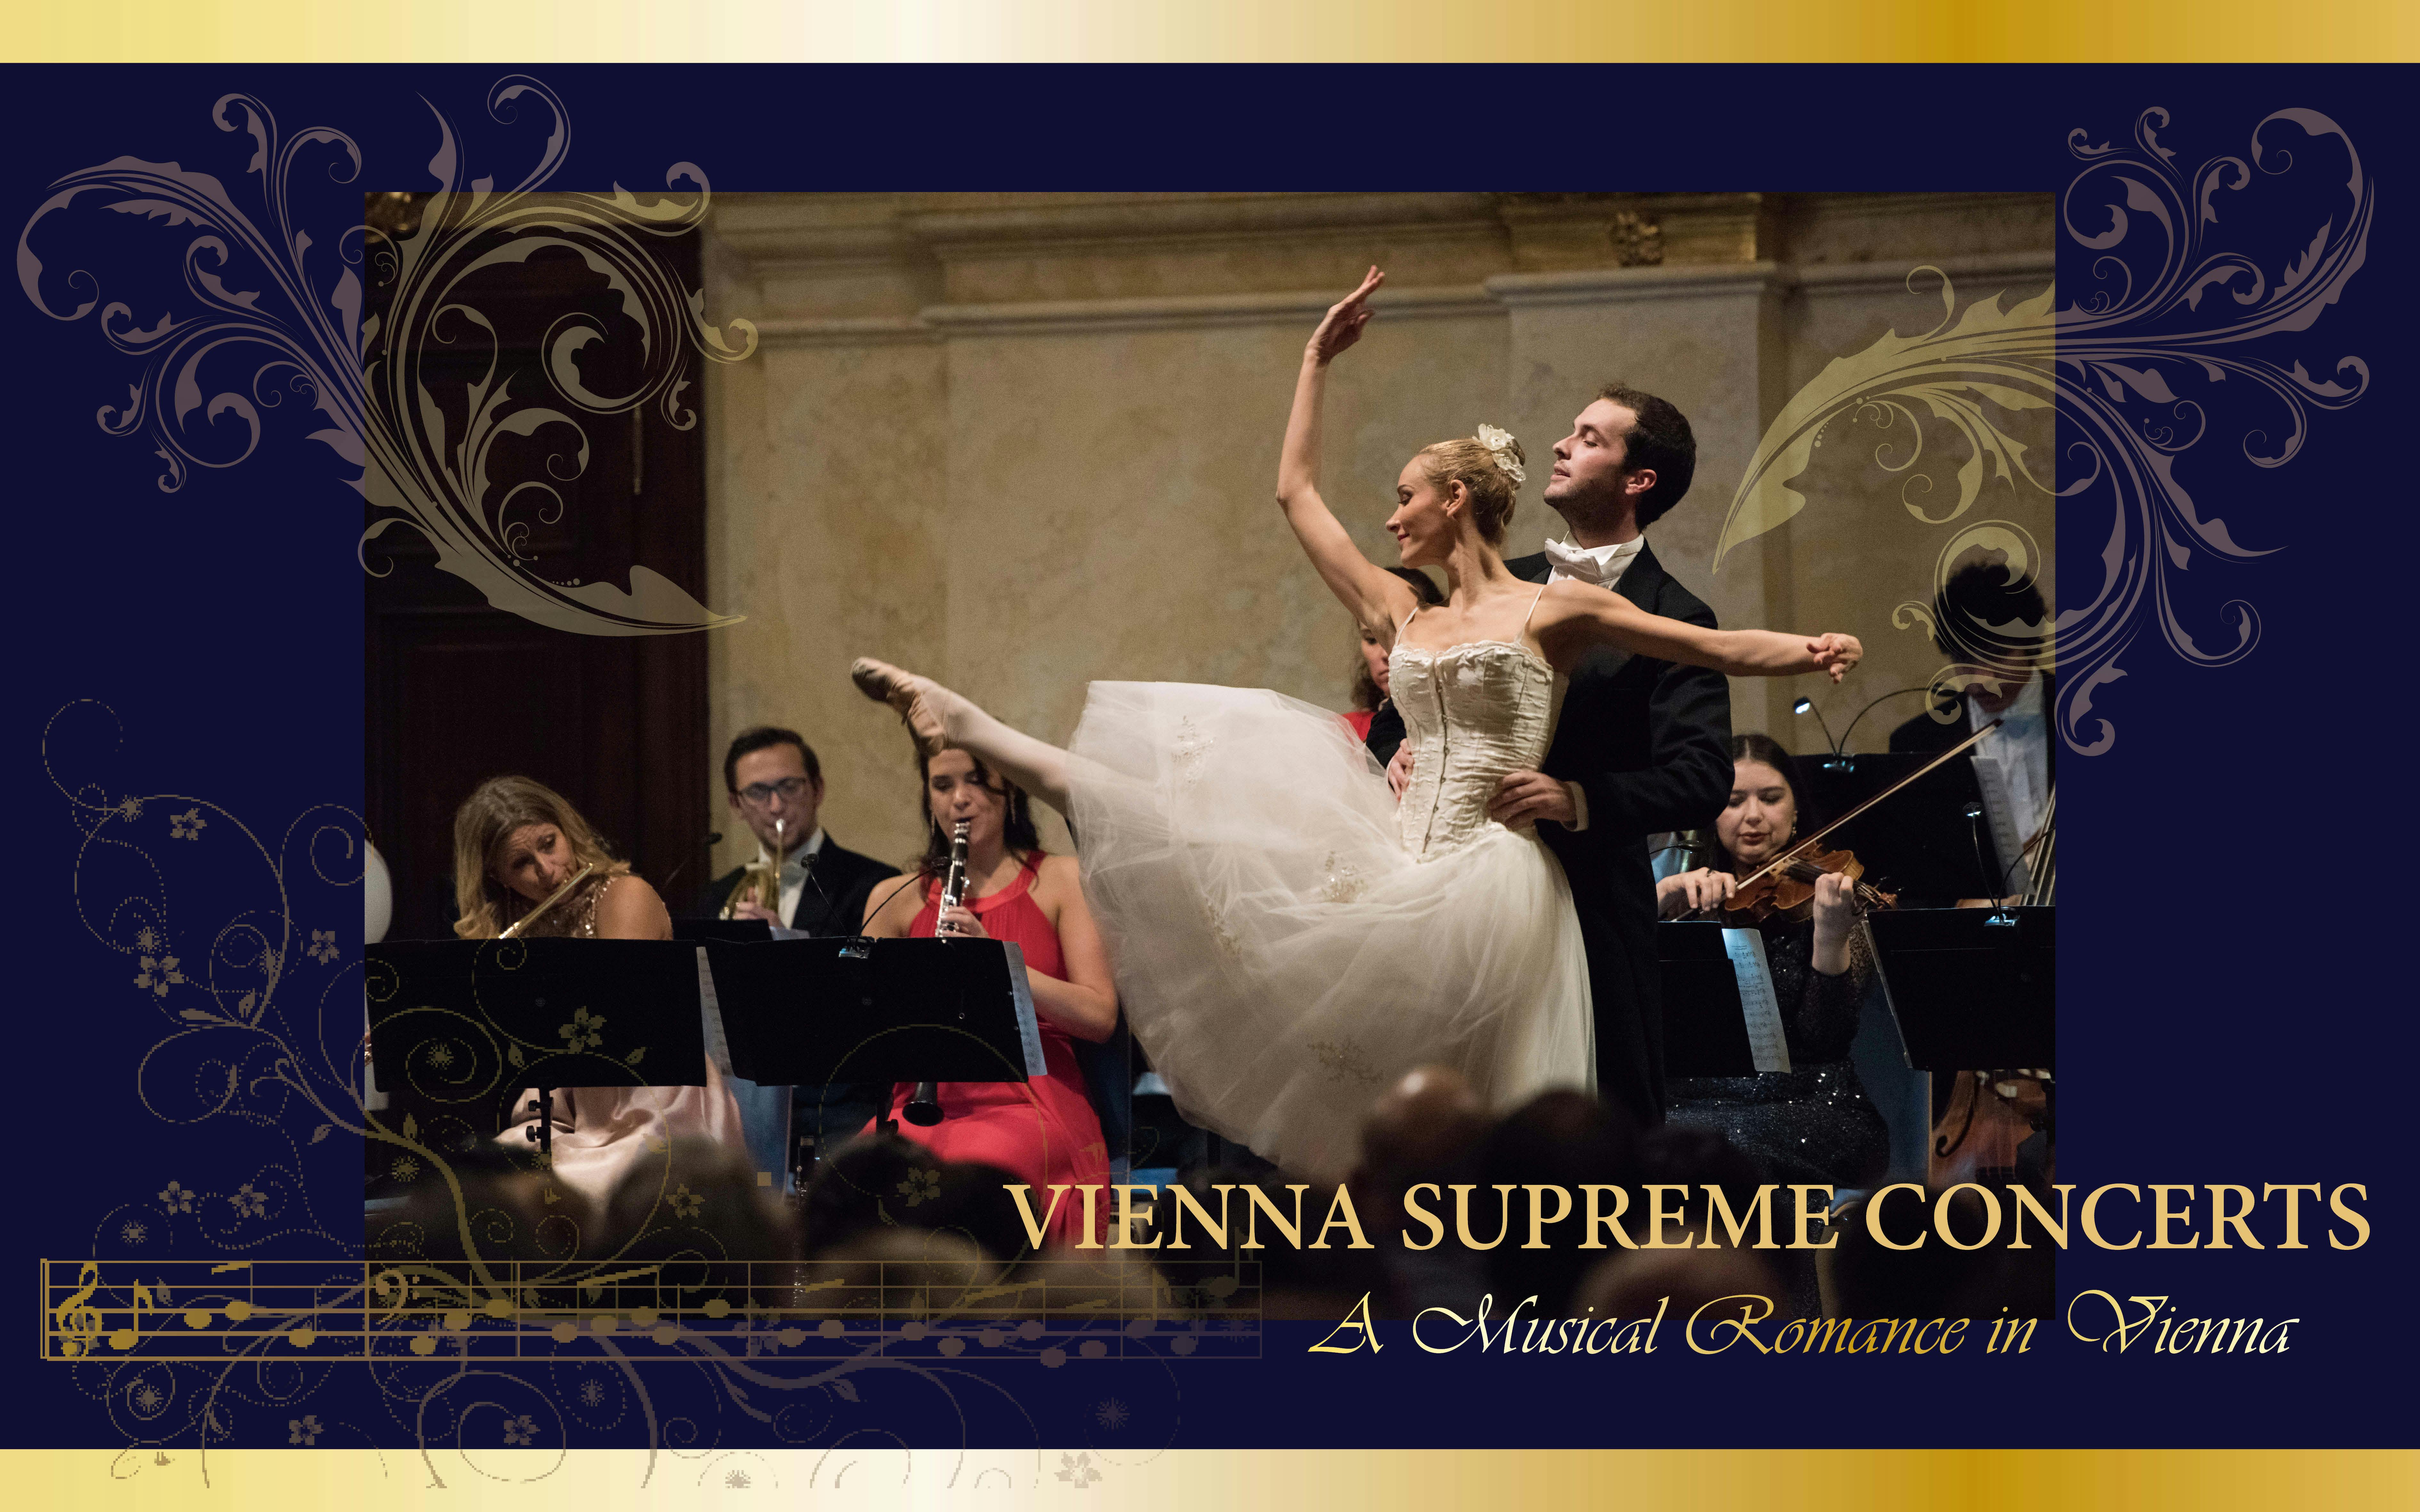 Vienna Supreme Concerts im Palais Niederösterreich